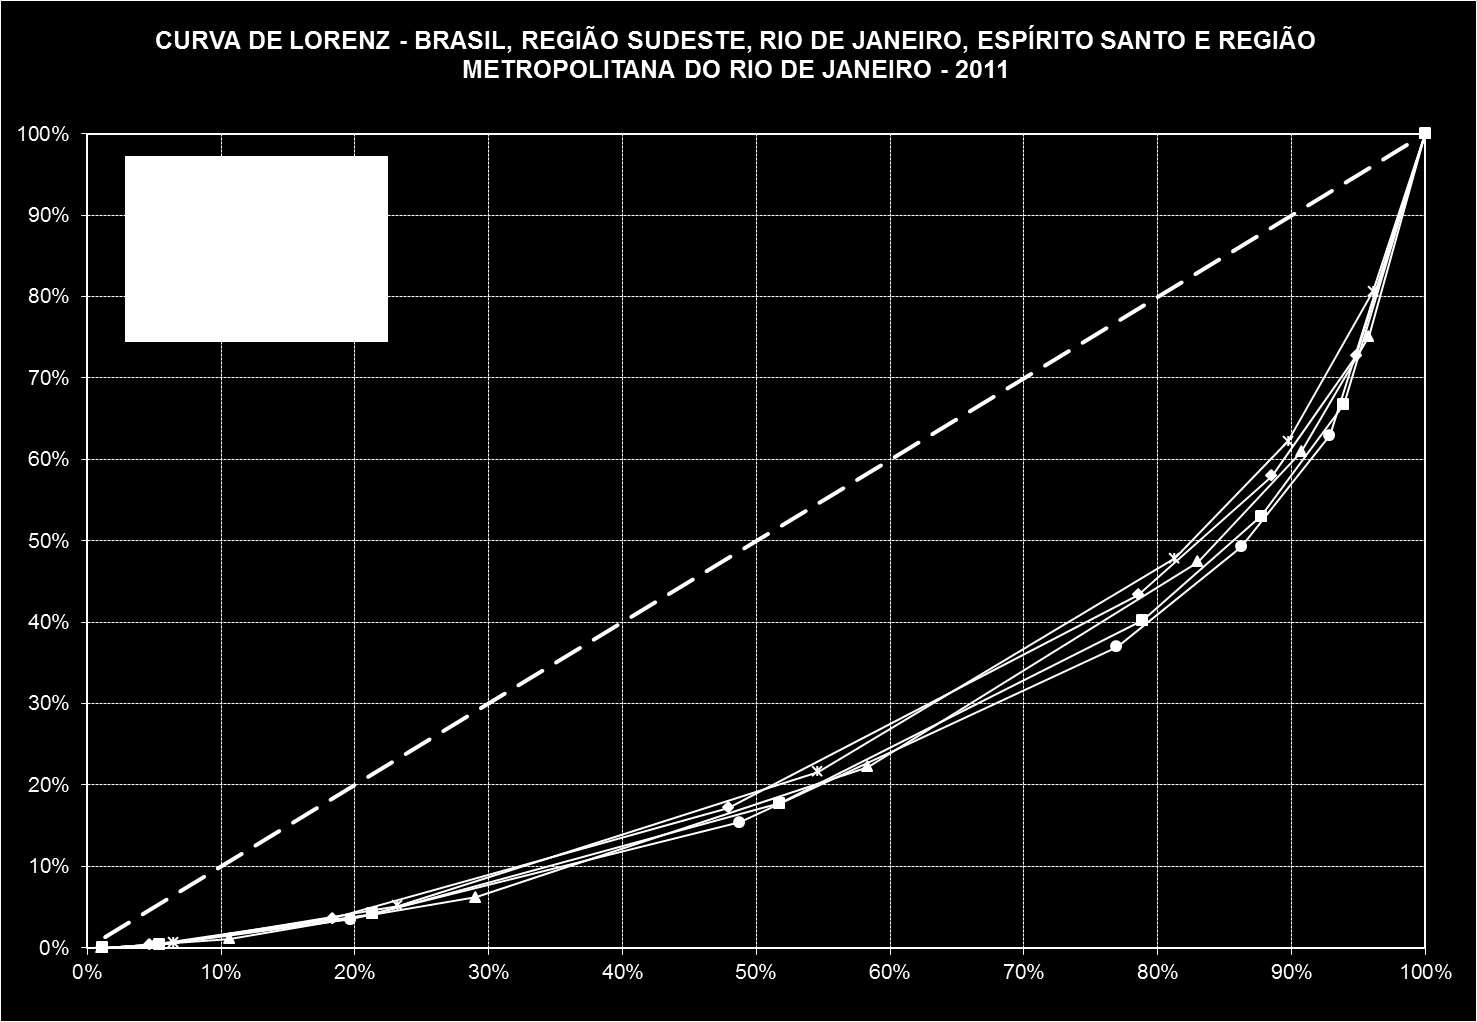 Gráfico 55 - Curva de Lorenz - Brasil, Região Sudeste, Espírito Santo, Rio de Janeiro e Região Metropolitana do Rio de Janeiro (2001) Fonte: IBGE, PNAD 2001